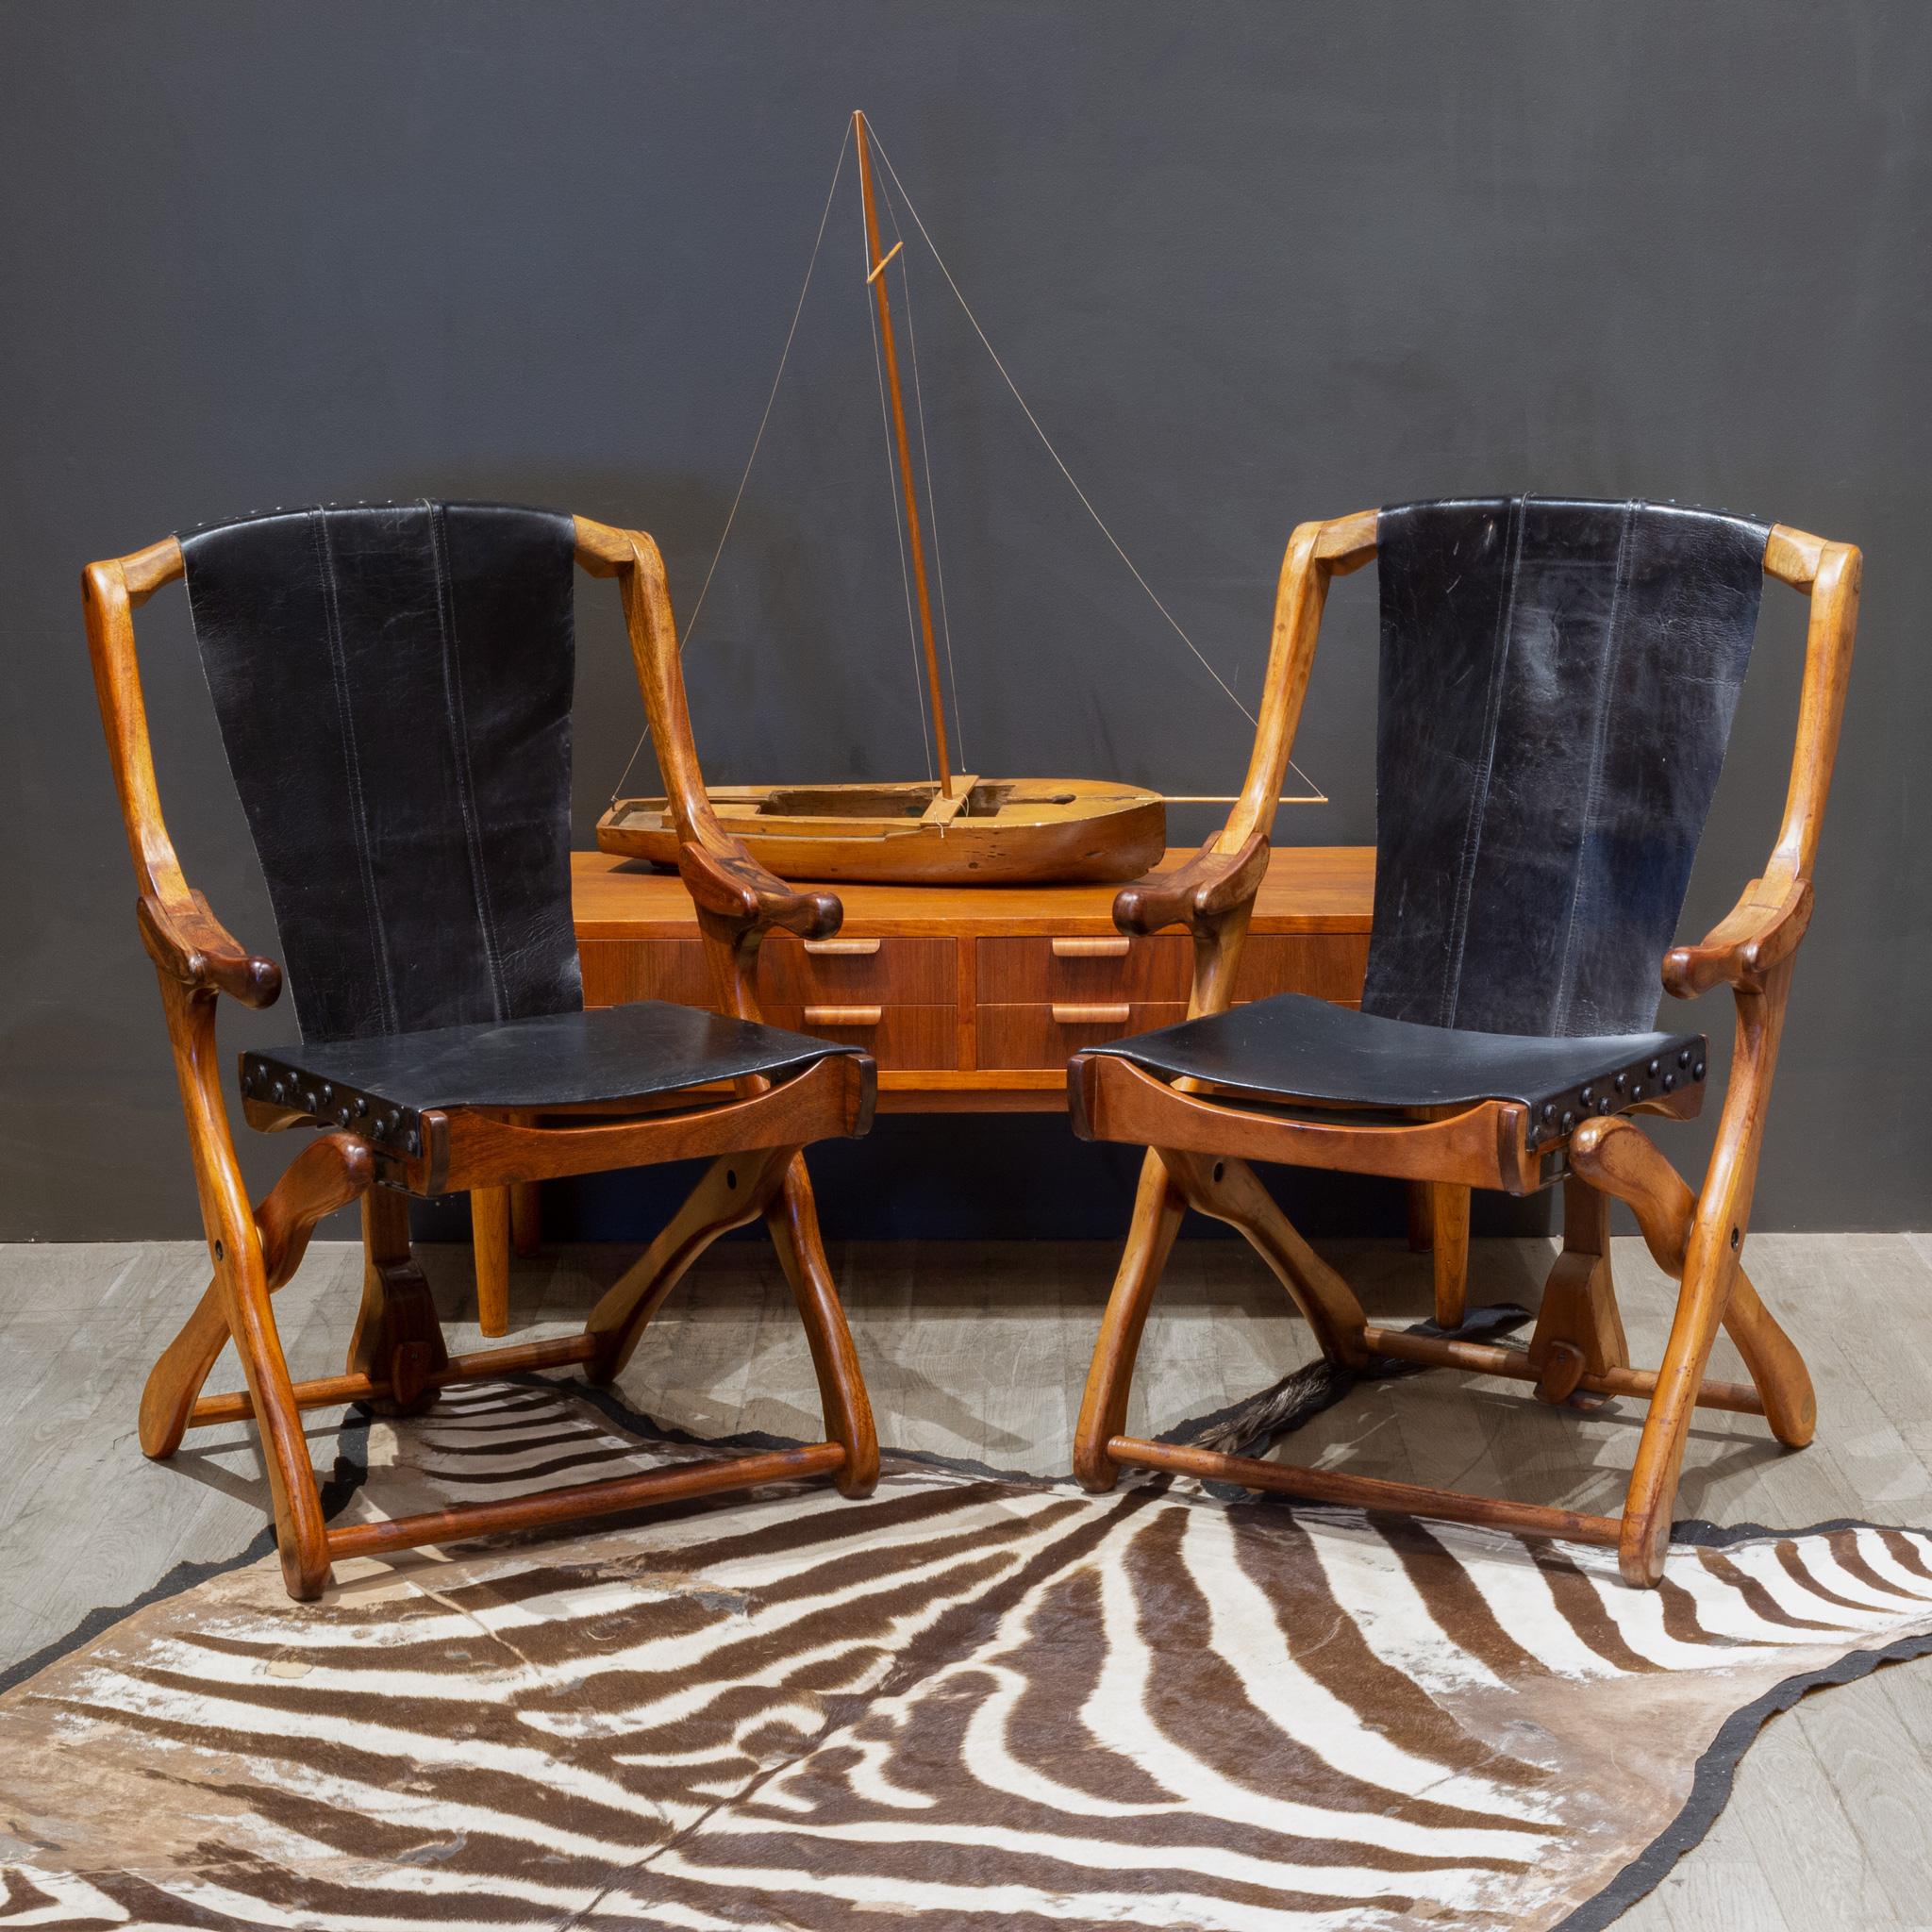 À PROPOS DE

Le prix est par chaise. Quatre disponibles. 

Chaises longues pliantes originales conçues par Don Shoemaker pour Senal SA. Les chaises sont fabriquées en palissandre Cocobolo et recouvertes de cuir noir d'origine avec des épingles